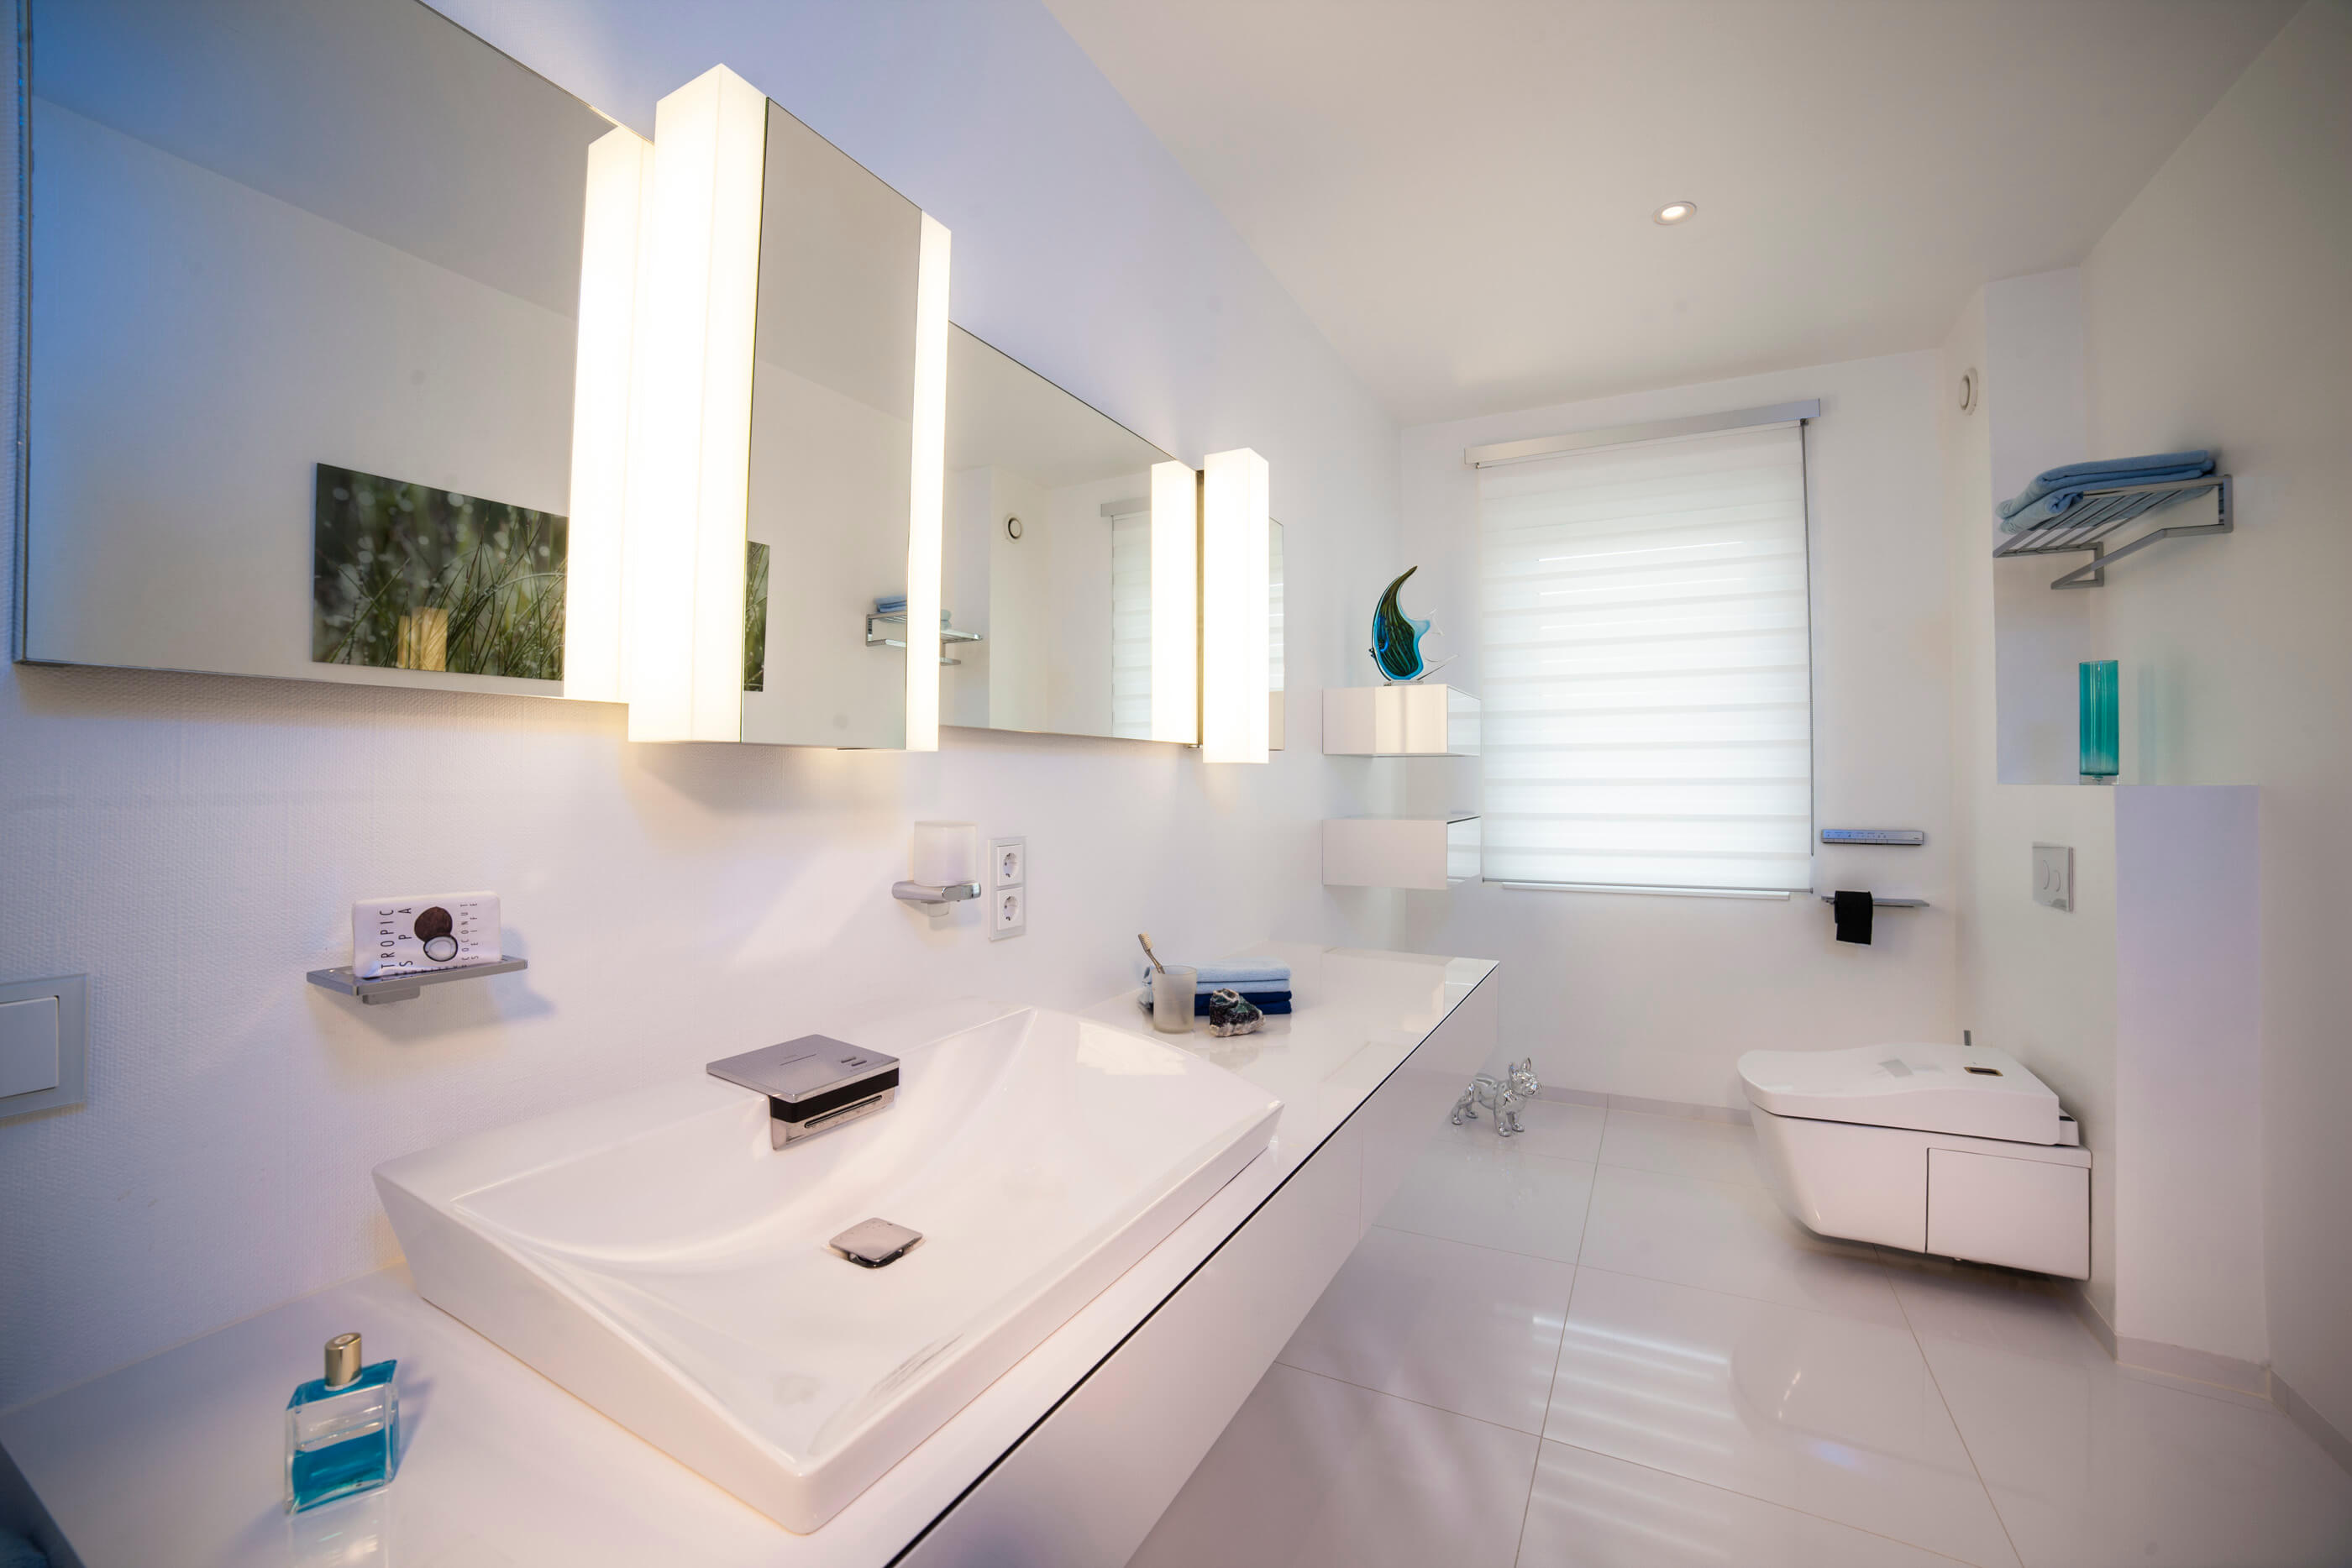 Kleines Bad in Weiß mit Washlet und Waschbereich damt großem, beleuchtetem Spiegel